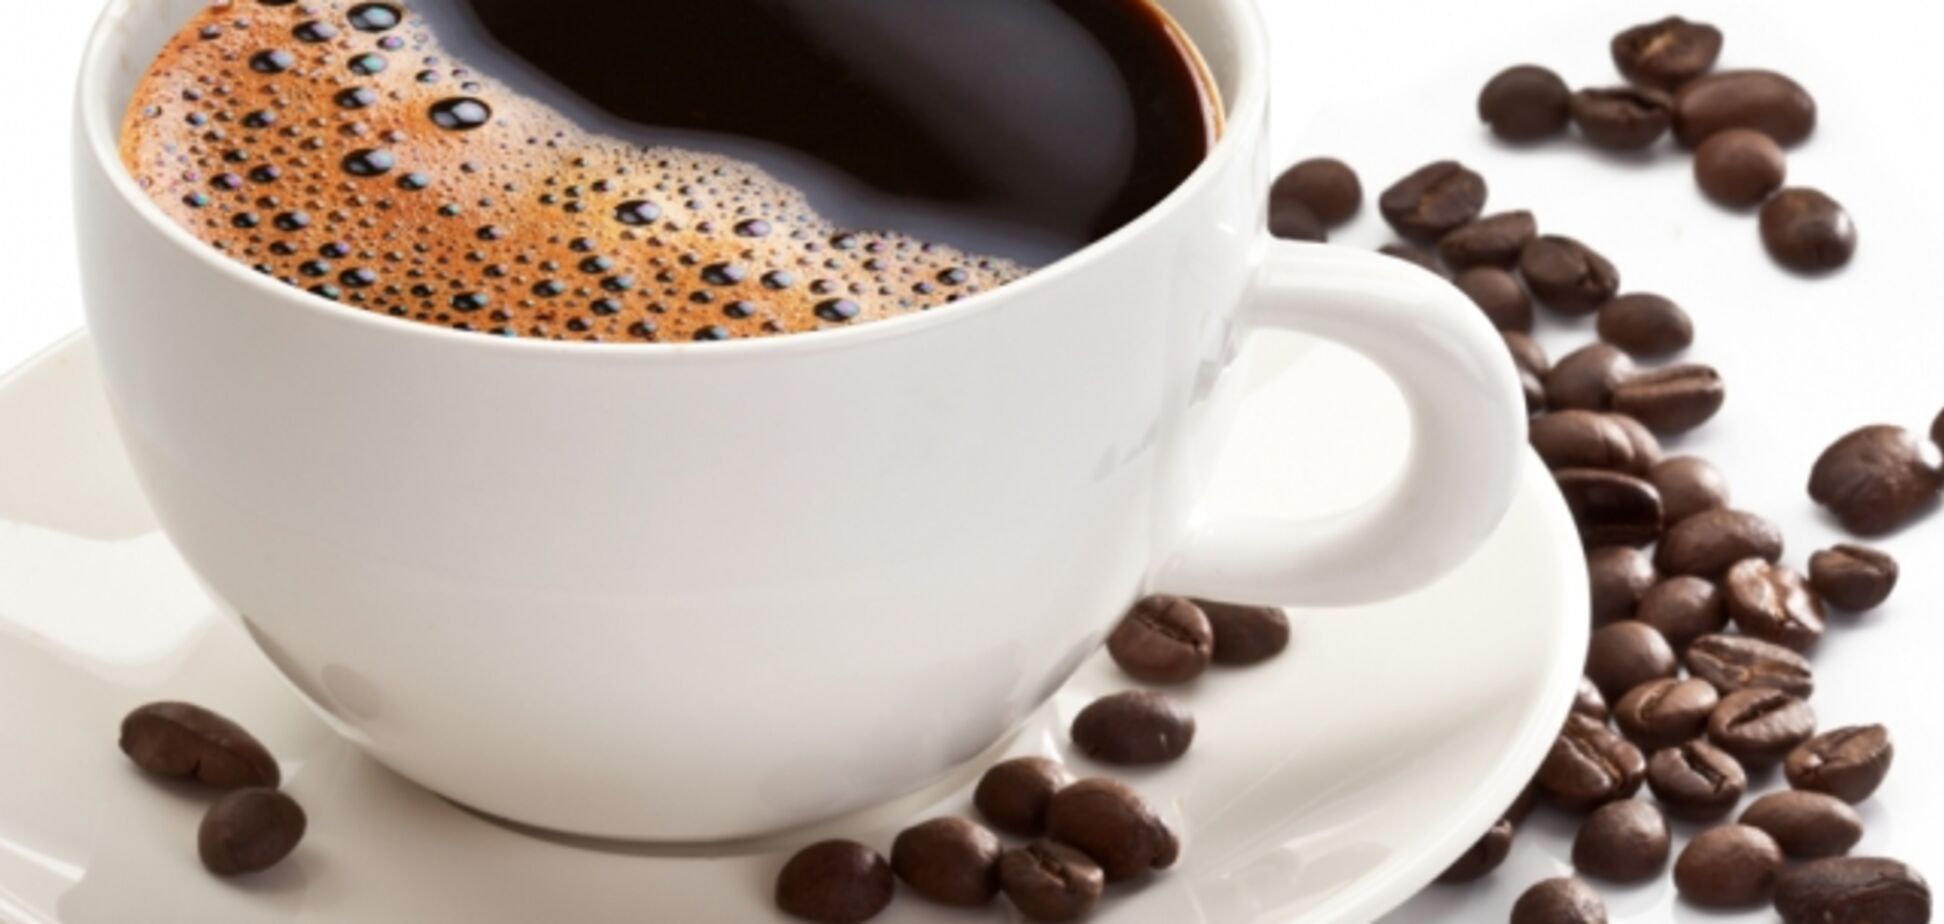 Коли найкорисніше пити каву: вранці чи вдень?